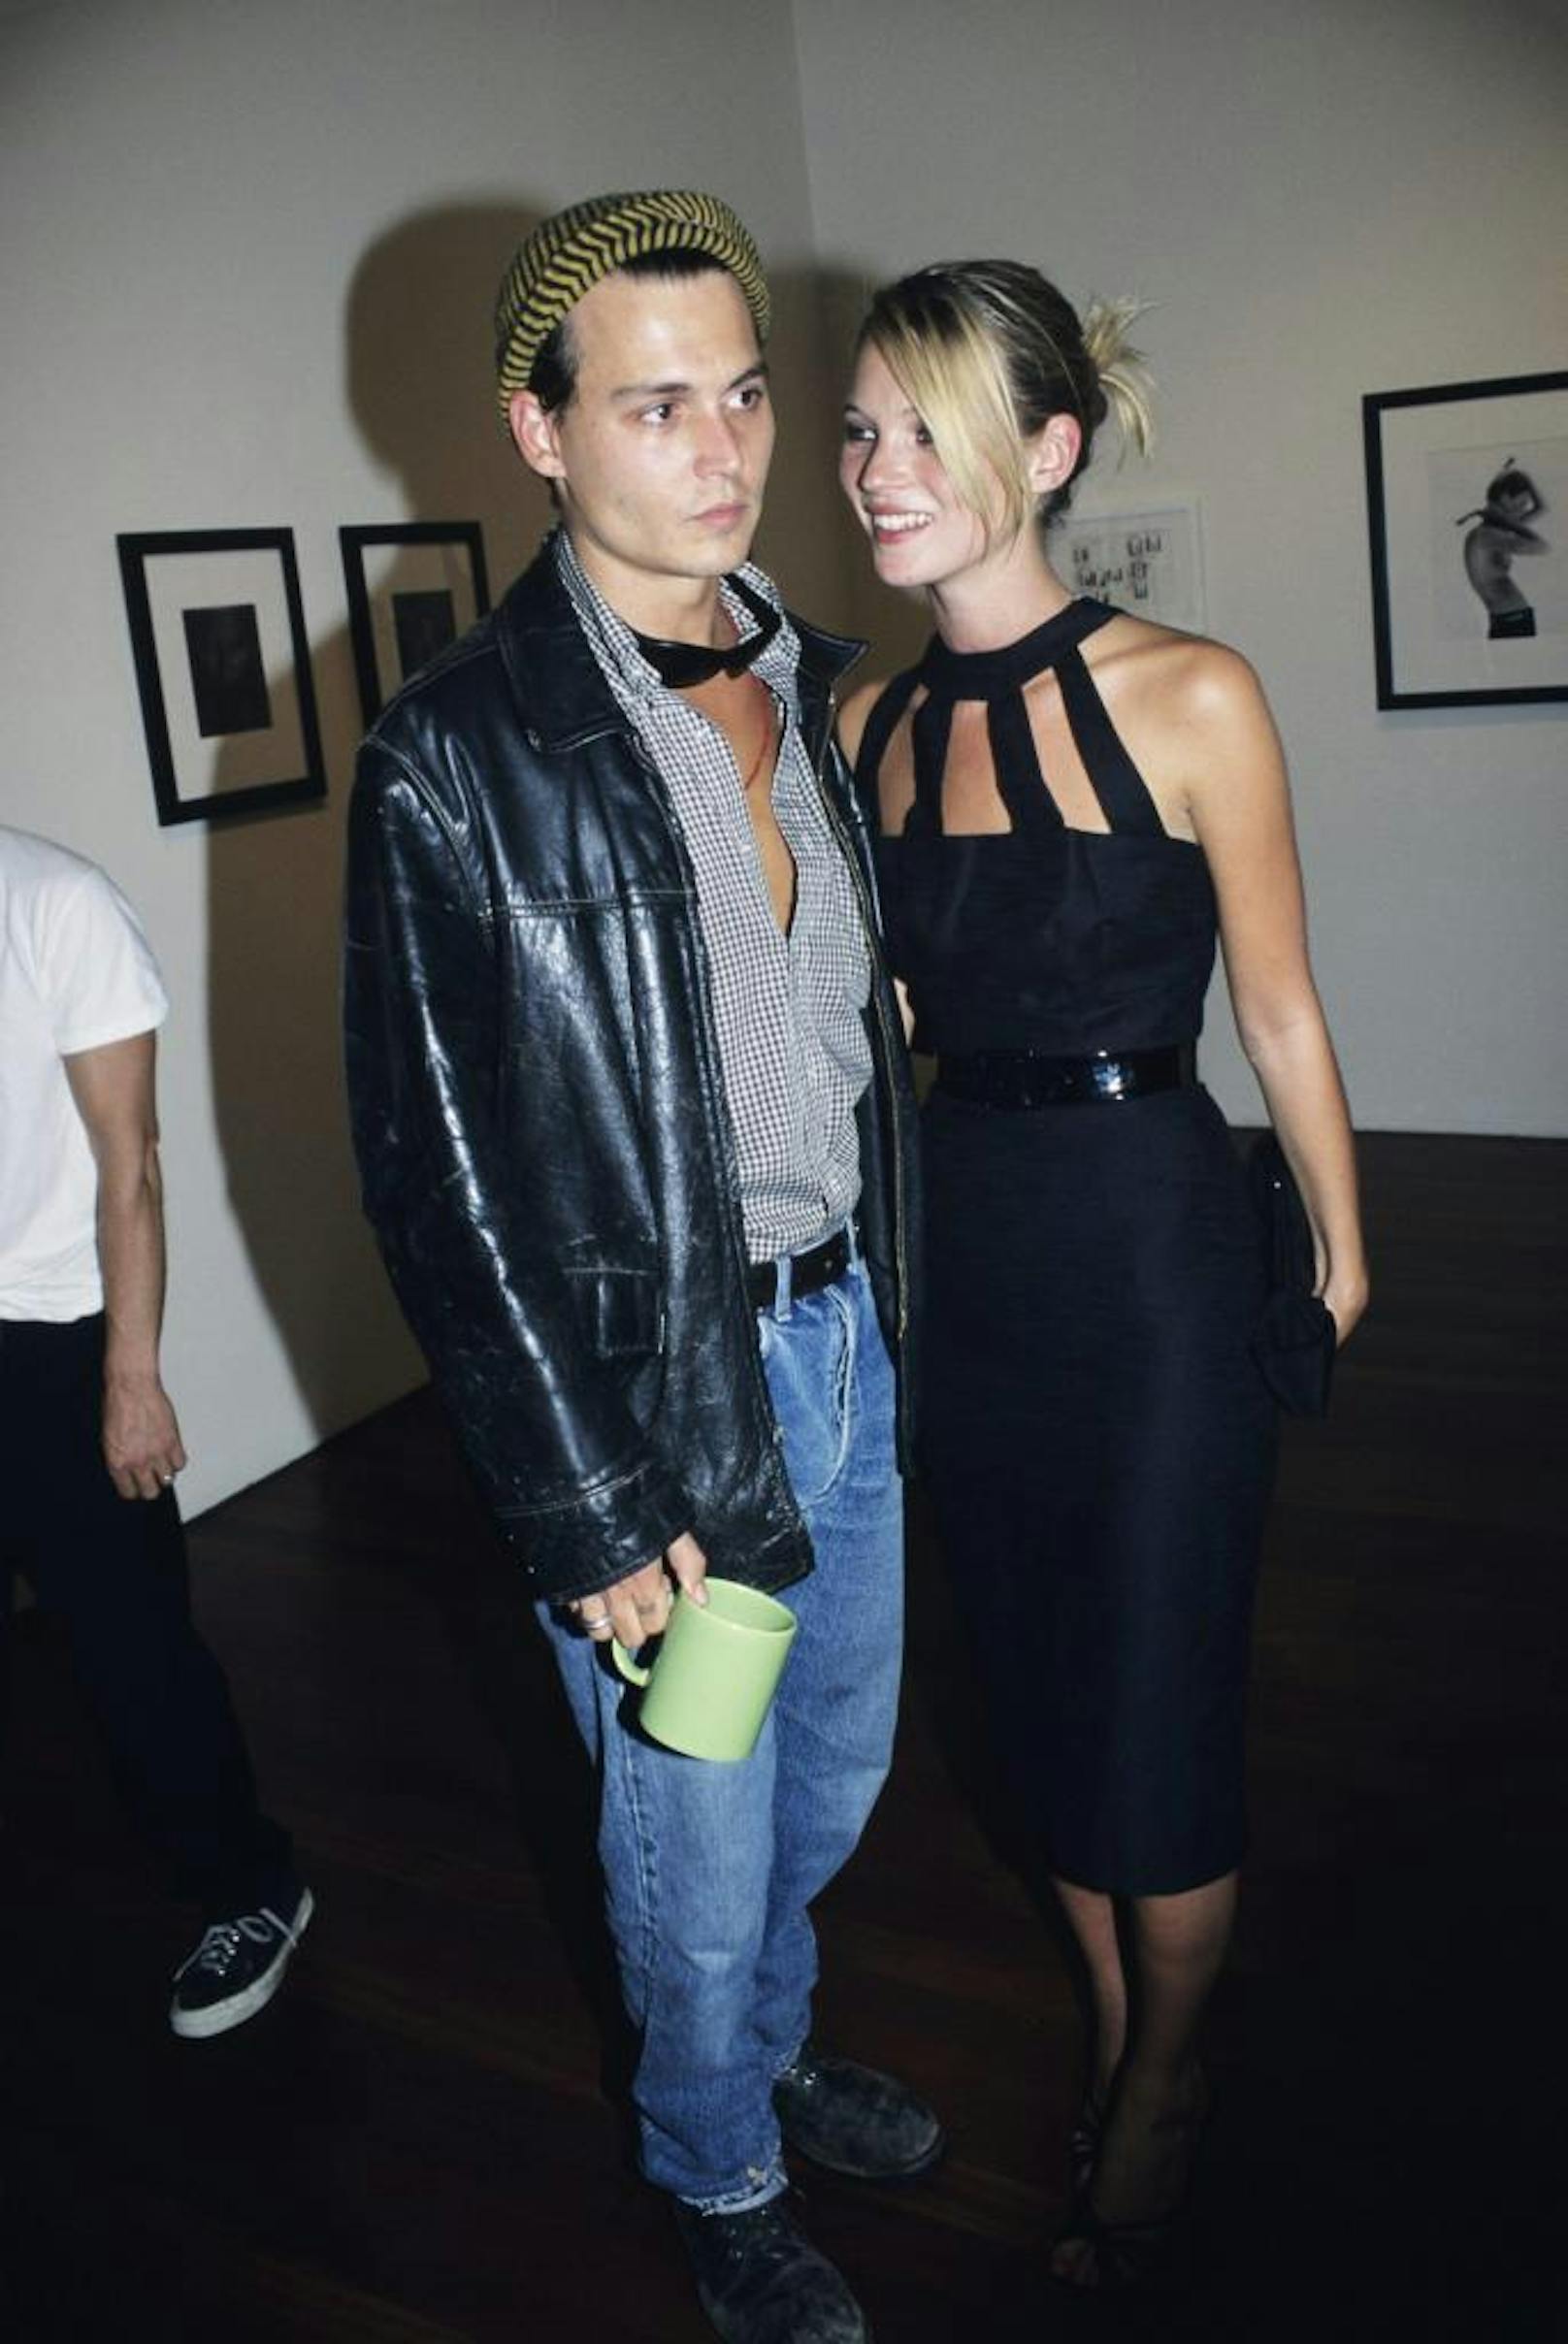 La Moss mit Boyfriend Johnny Depp 1995, das Kleid ist heute mehr als up to date.